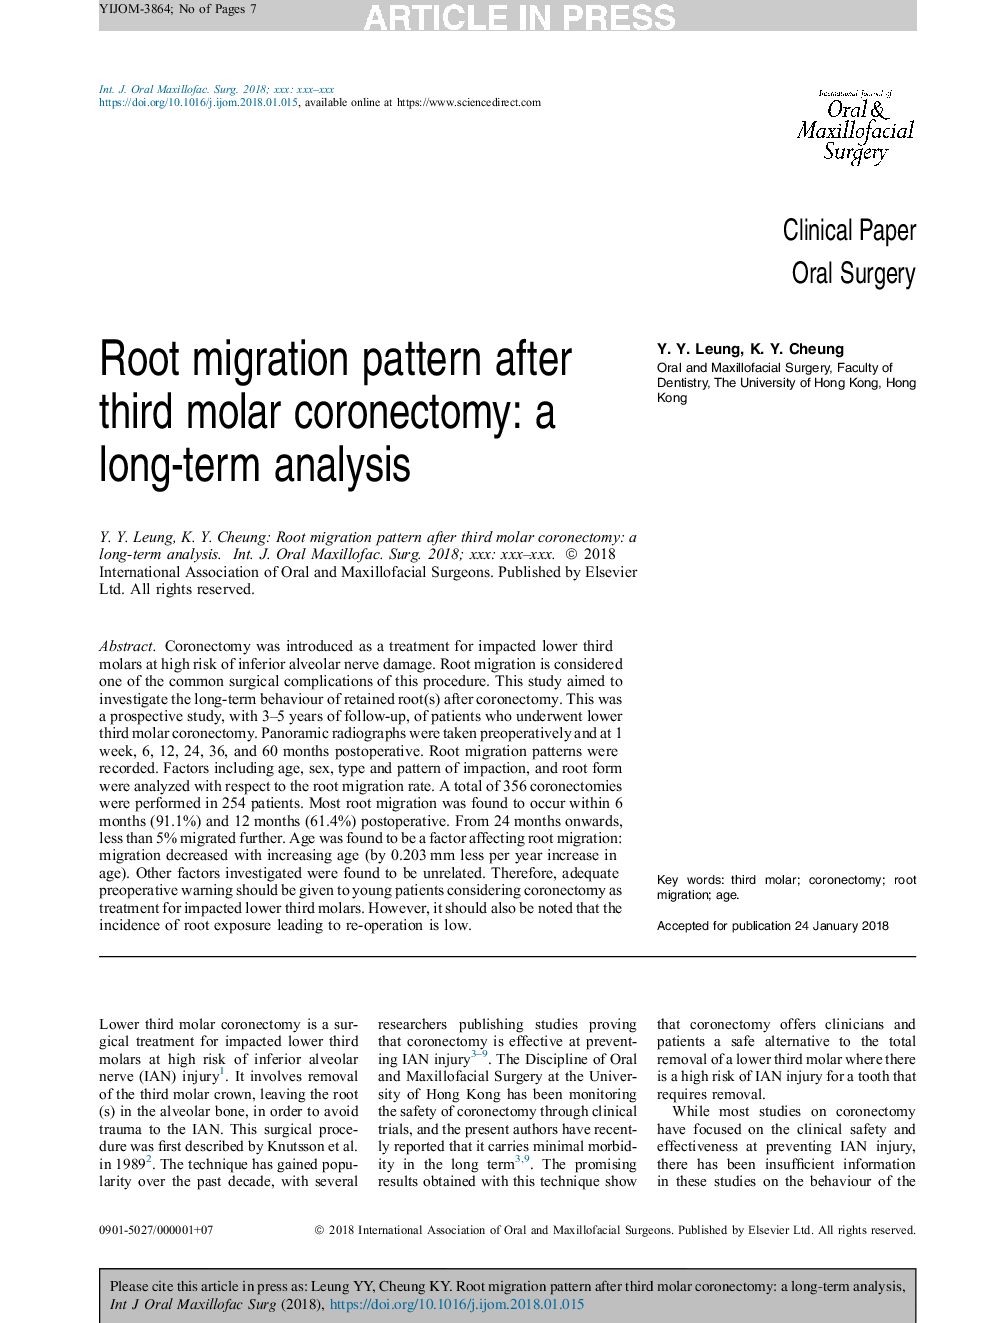 الگوی مهاجرت ریشه بعد از کرونکتومی مولر سوم: یک تحلیل طولانی مدت 